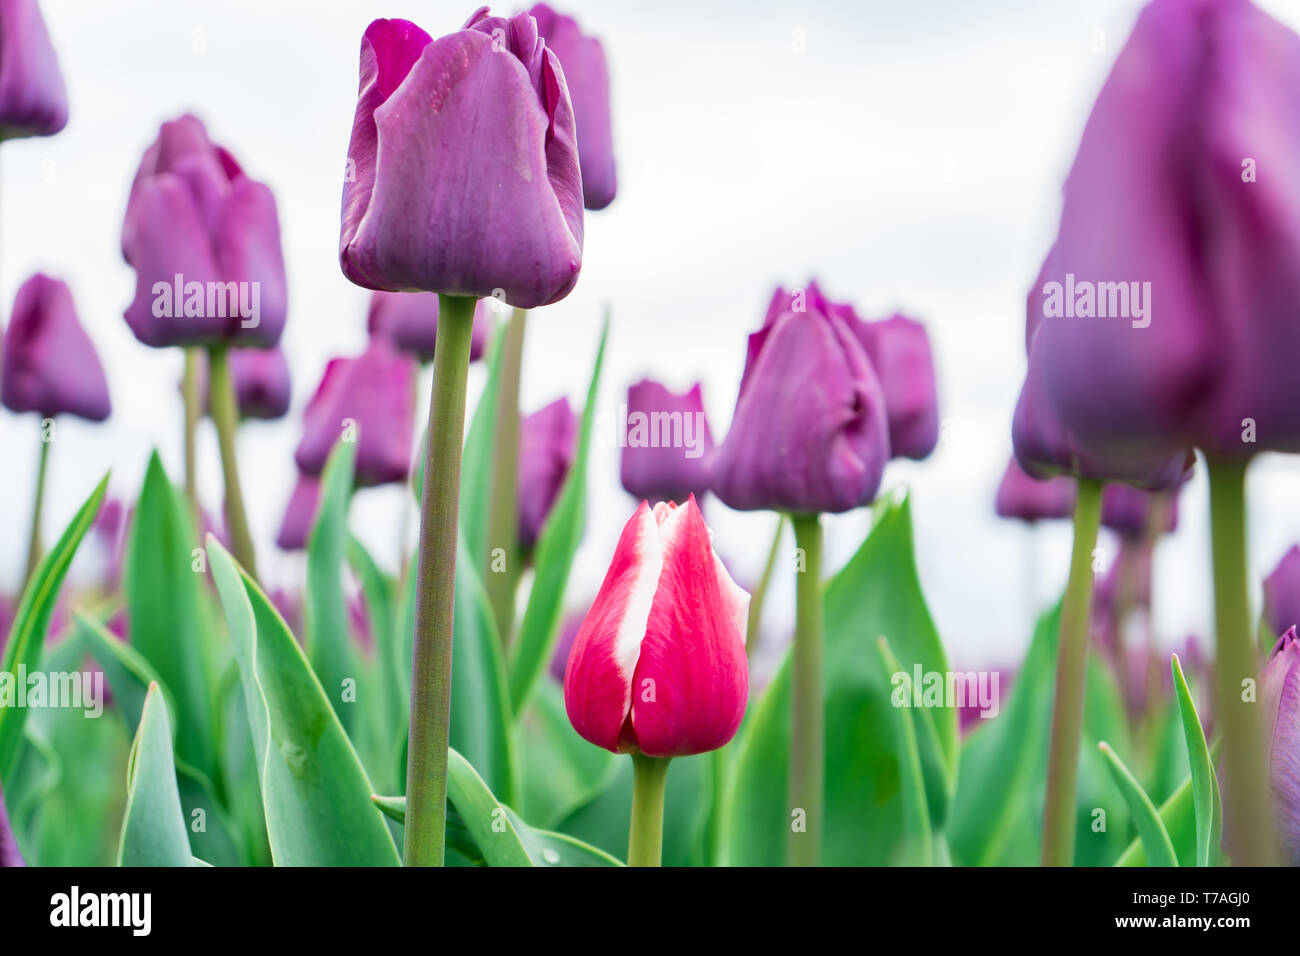 Basso angolo di visione del rosso e del bianco french tulip crescente tra un campo di trionfo viola i tulipani. Close-up, foto alta risoluzione dei tulipani. Foto Stock